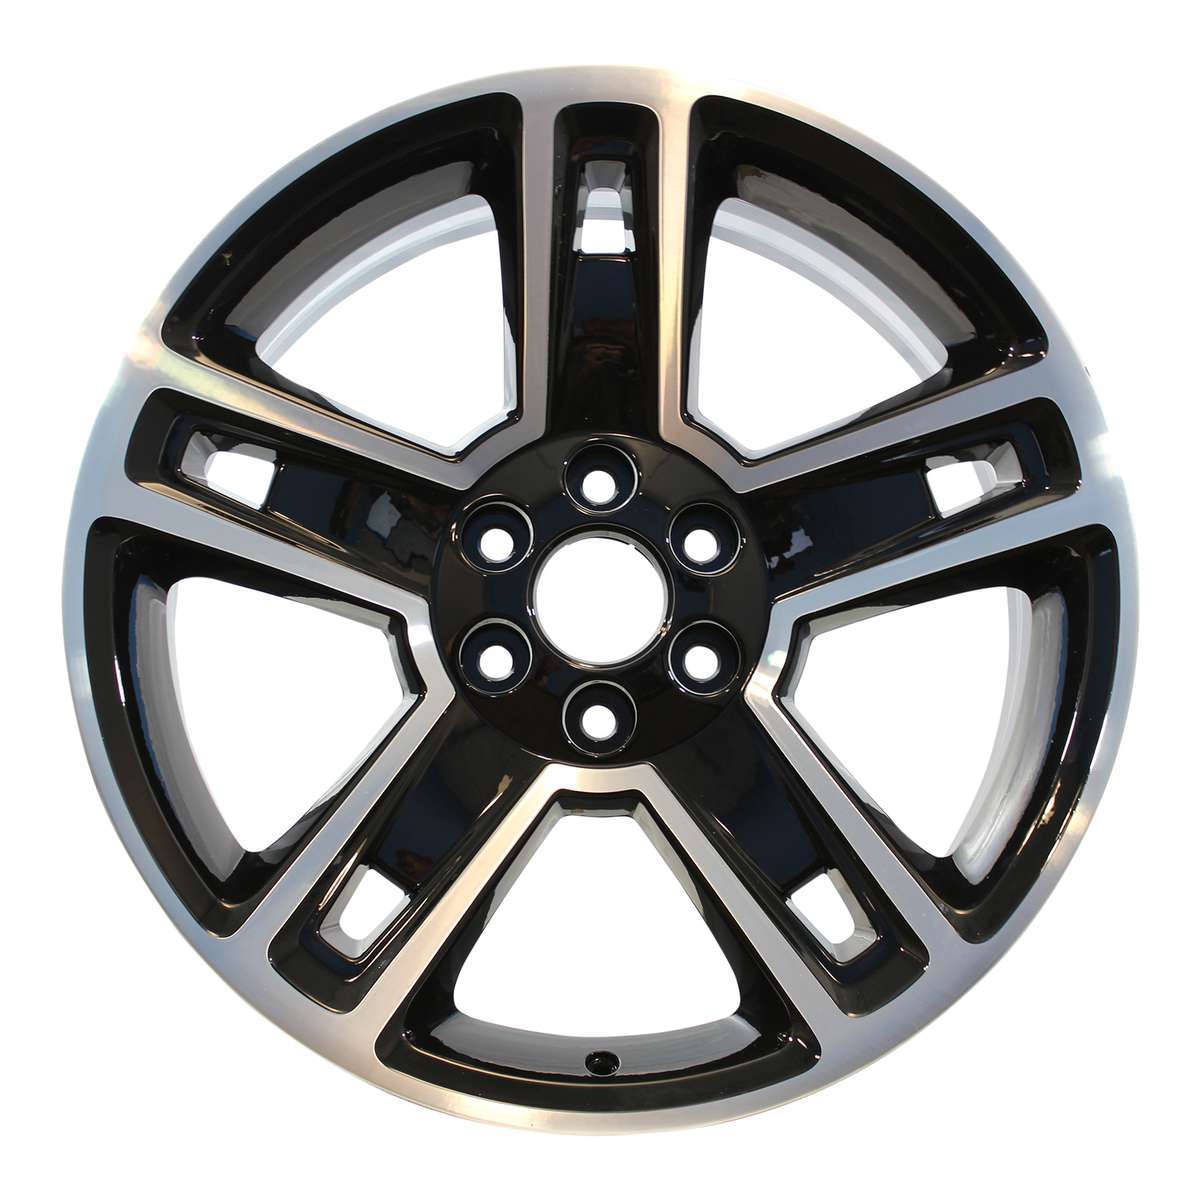 2014 Chevrolet Silverado 1500 22" OEM Wheel Rim W5664PB